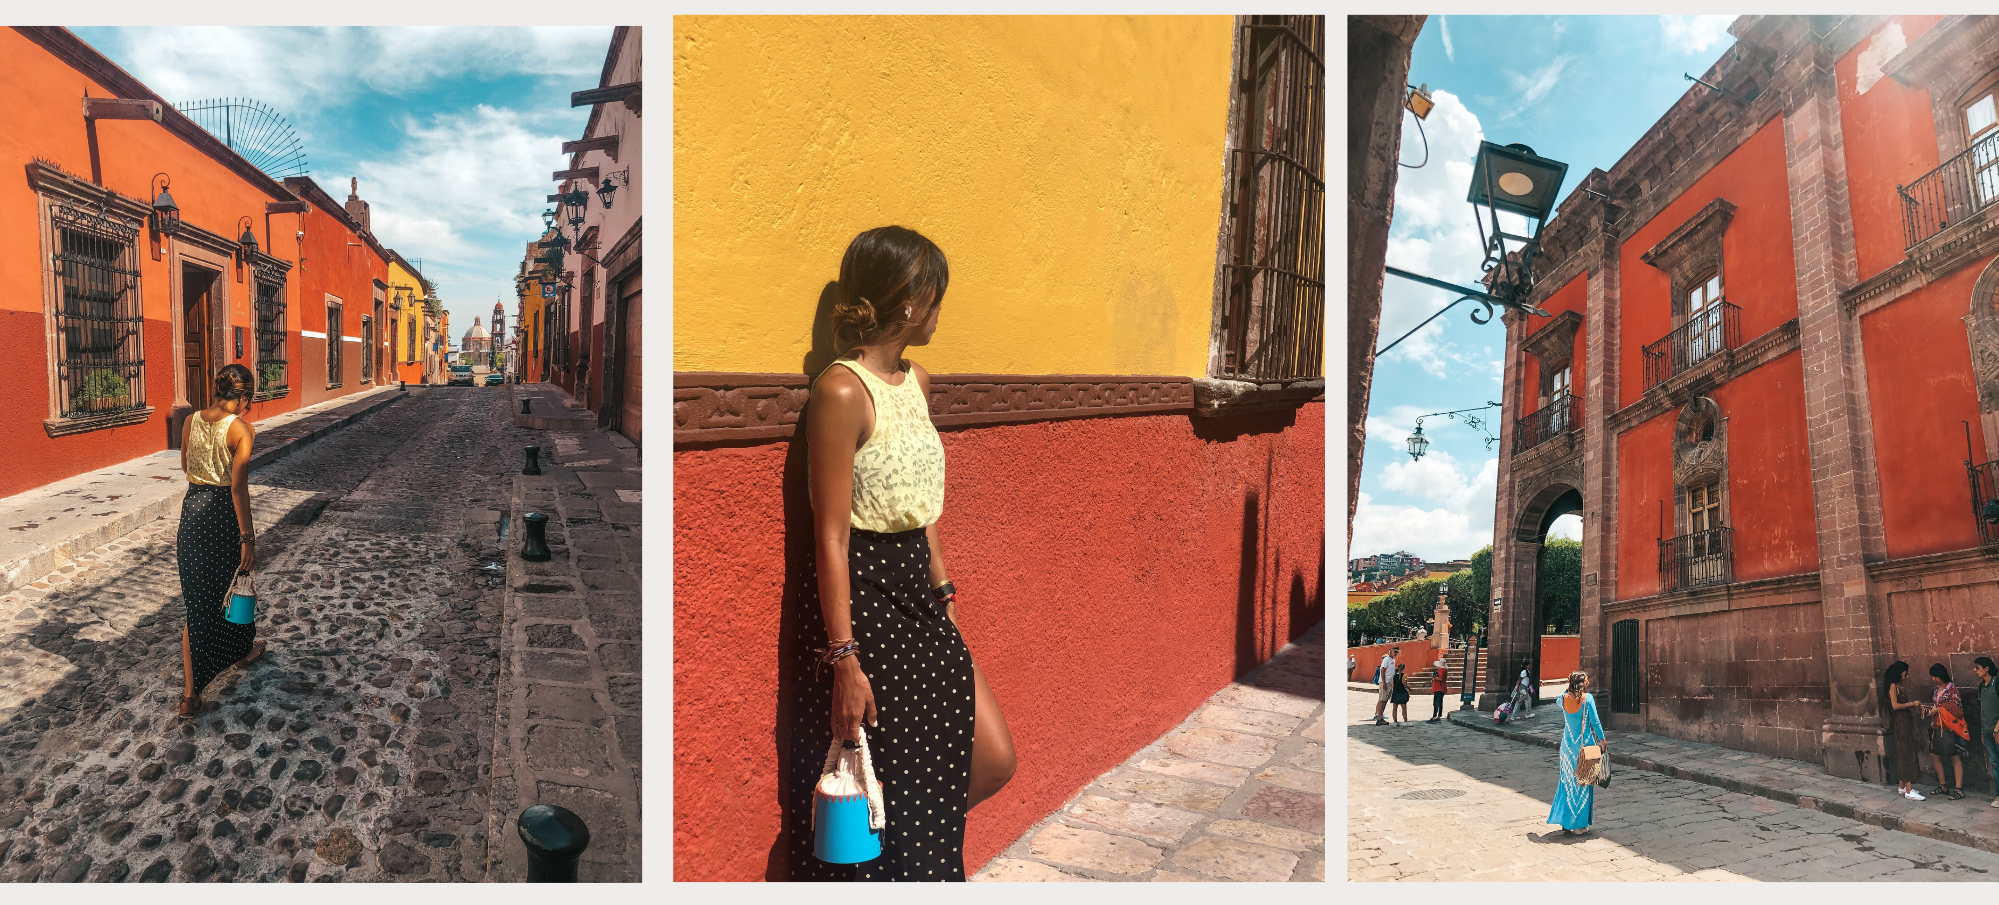 san miguel de allende mexico colorful streets